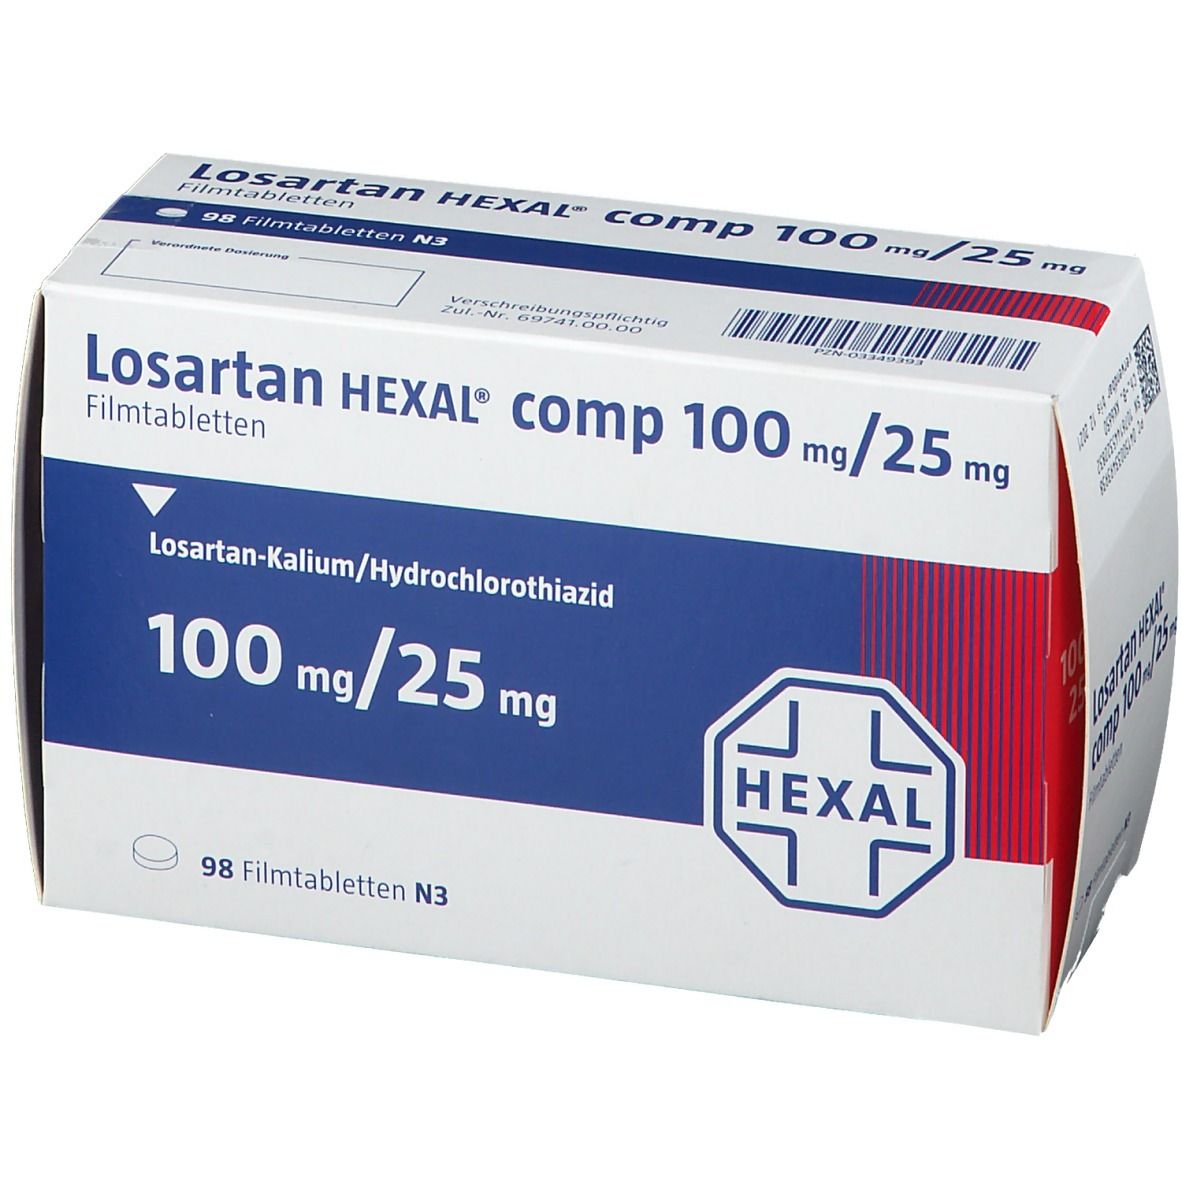 Losartan HEXAL® comp 100 mg/25 mg